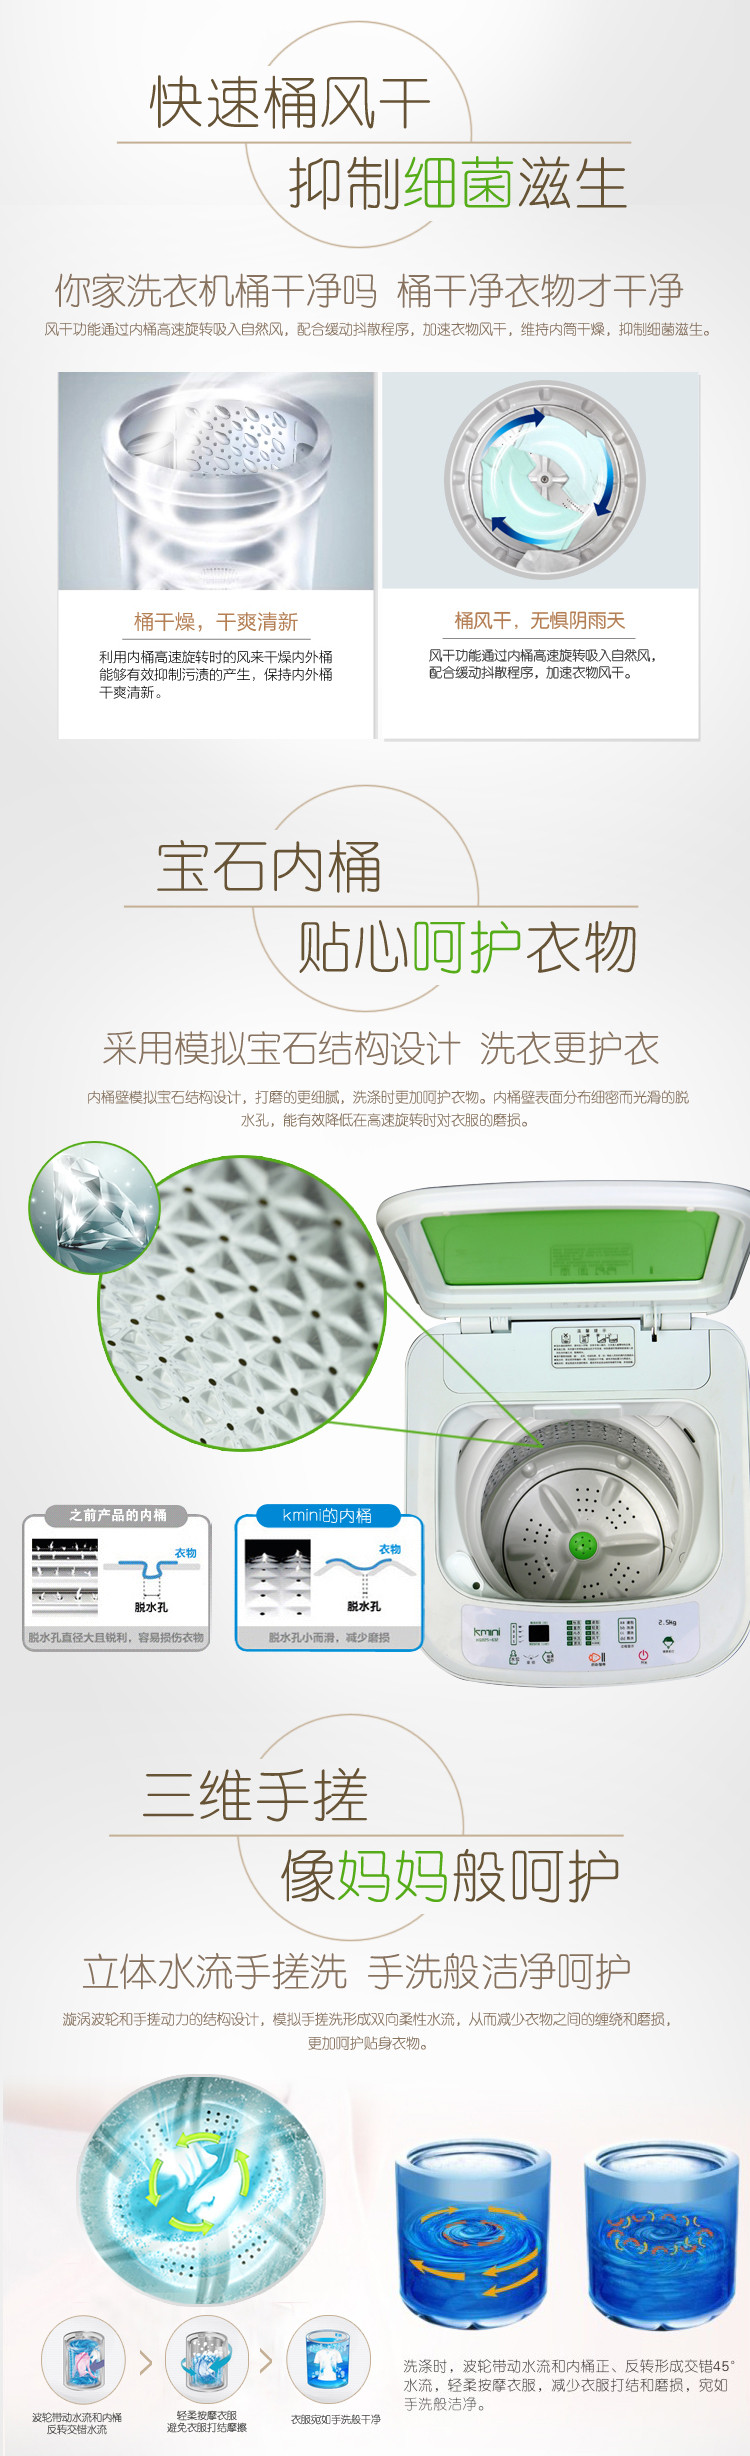 康佳kminiXQB25-632婴幼儿、内衣专用全自动洗衣机（碧波绿）